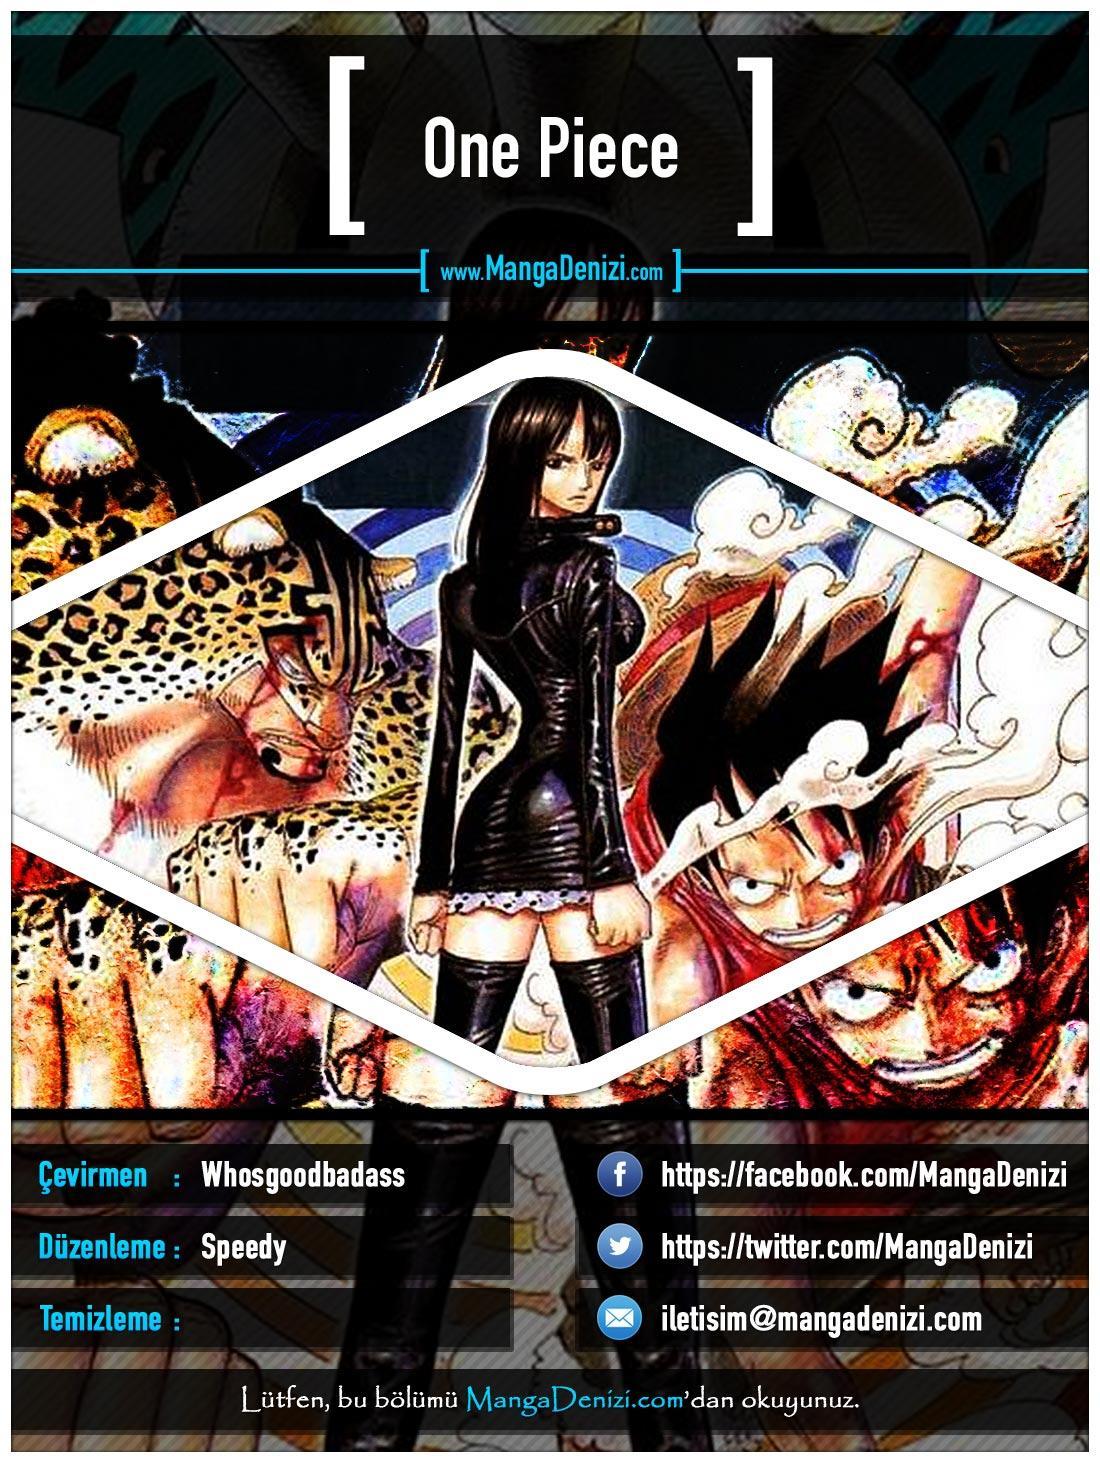 One Piece [Renkli] mangasının 0411 bölümünün 1. sayfasını okuyorsunuz.